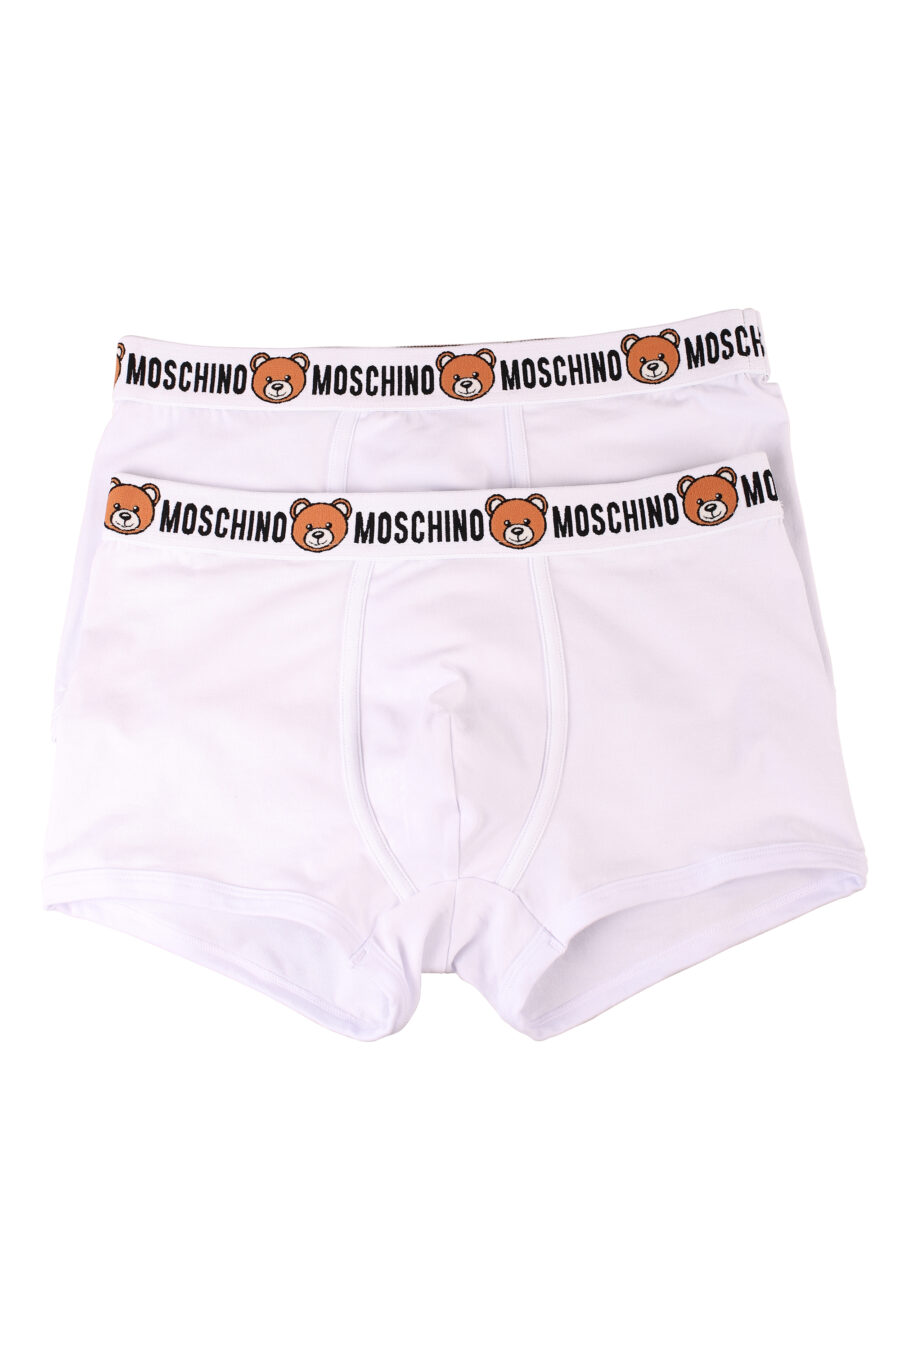 Pack de dos boxers blancos con logo oso "underbear" - IMG 8551